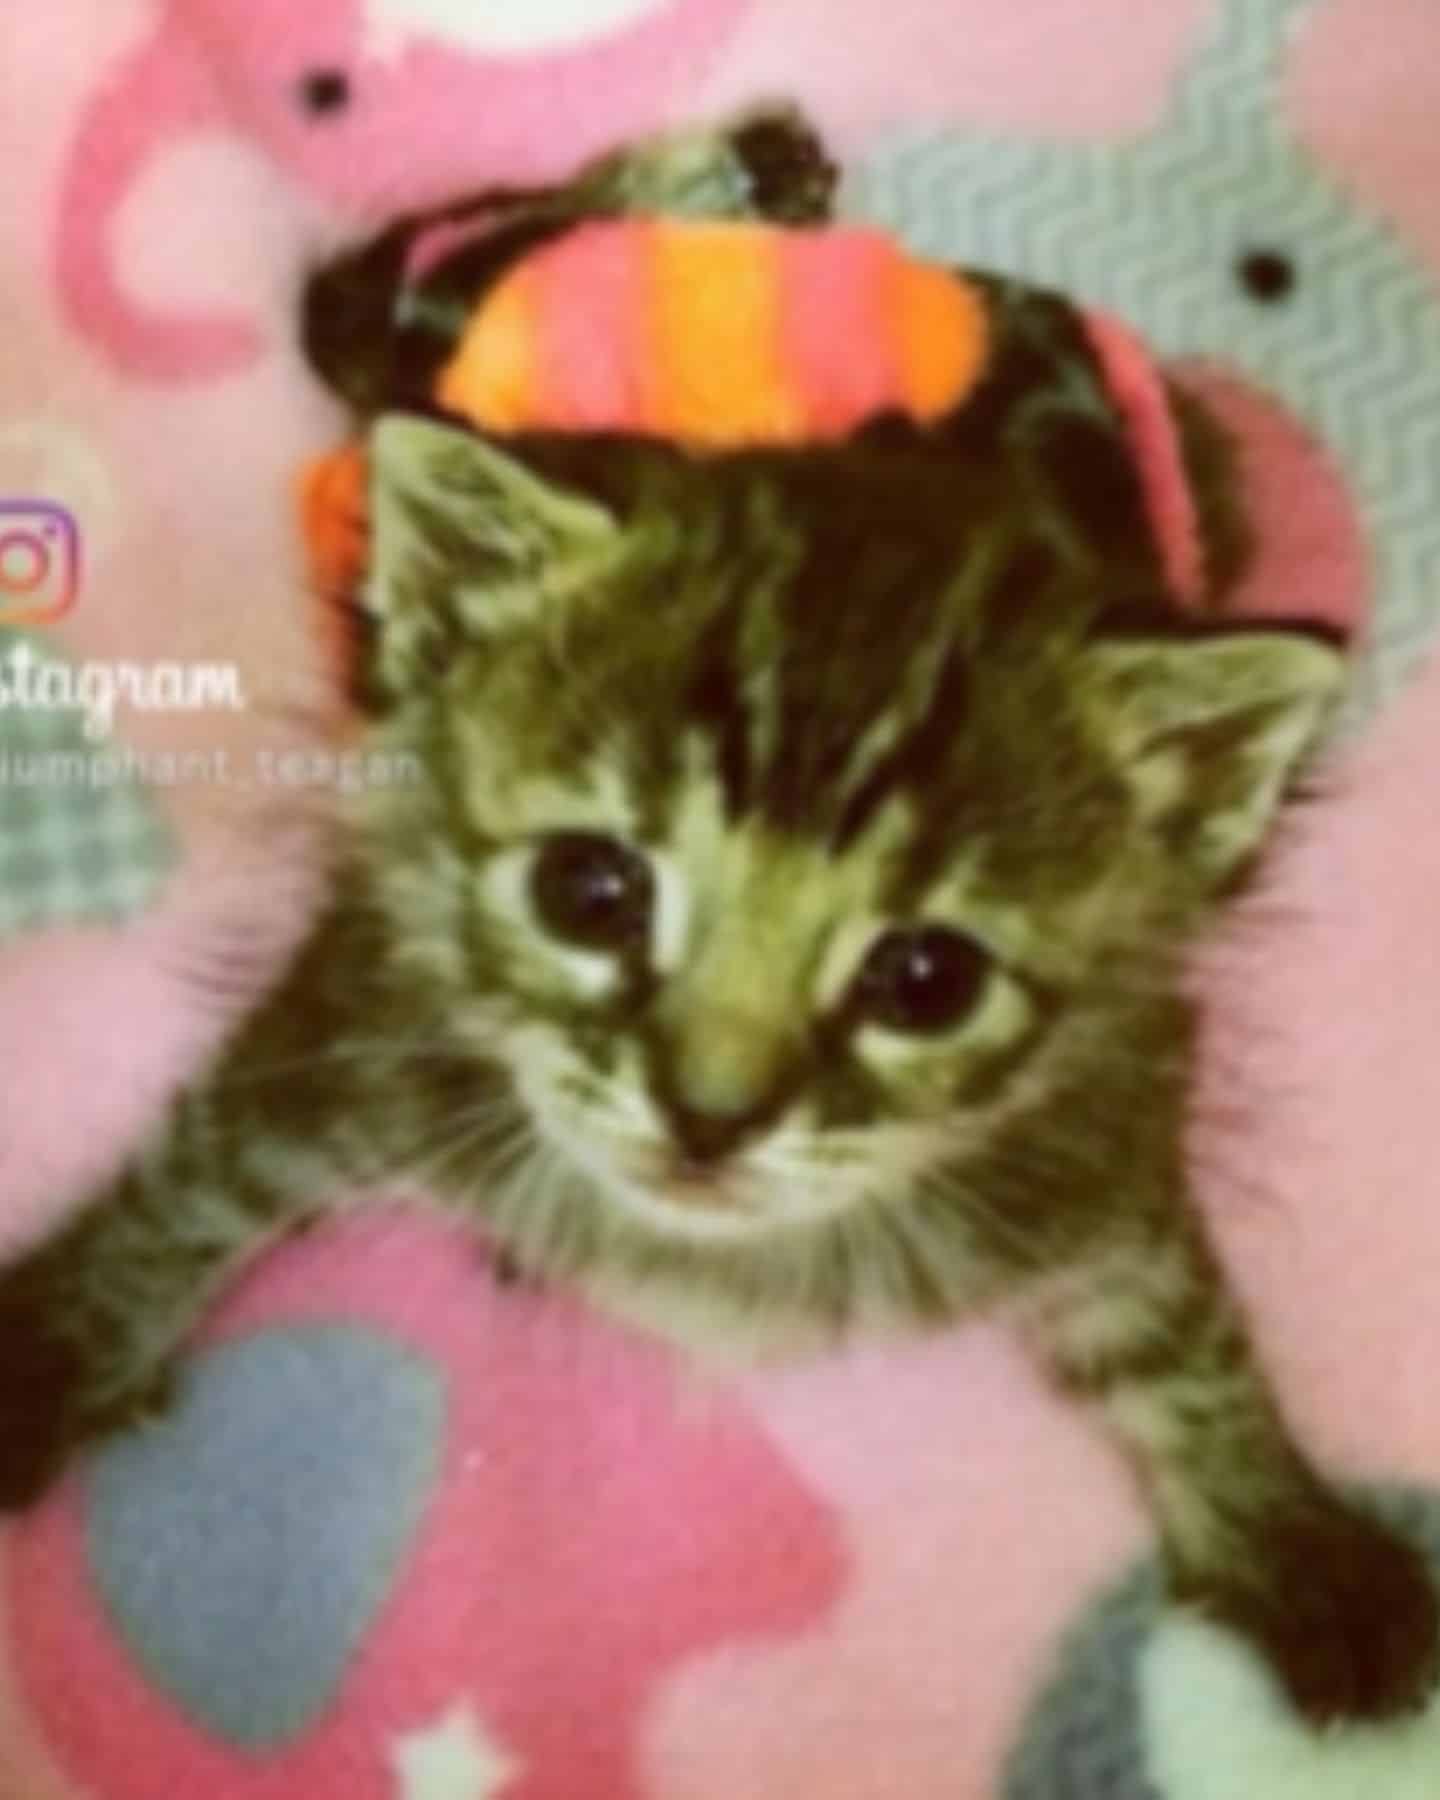 instagram post of kitten